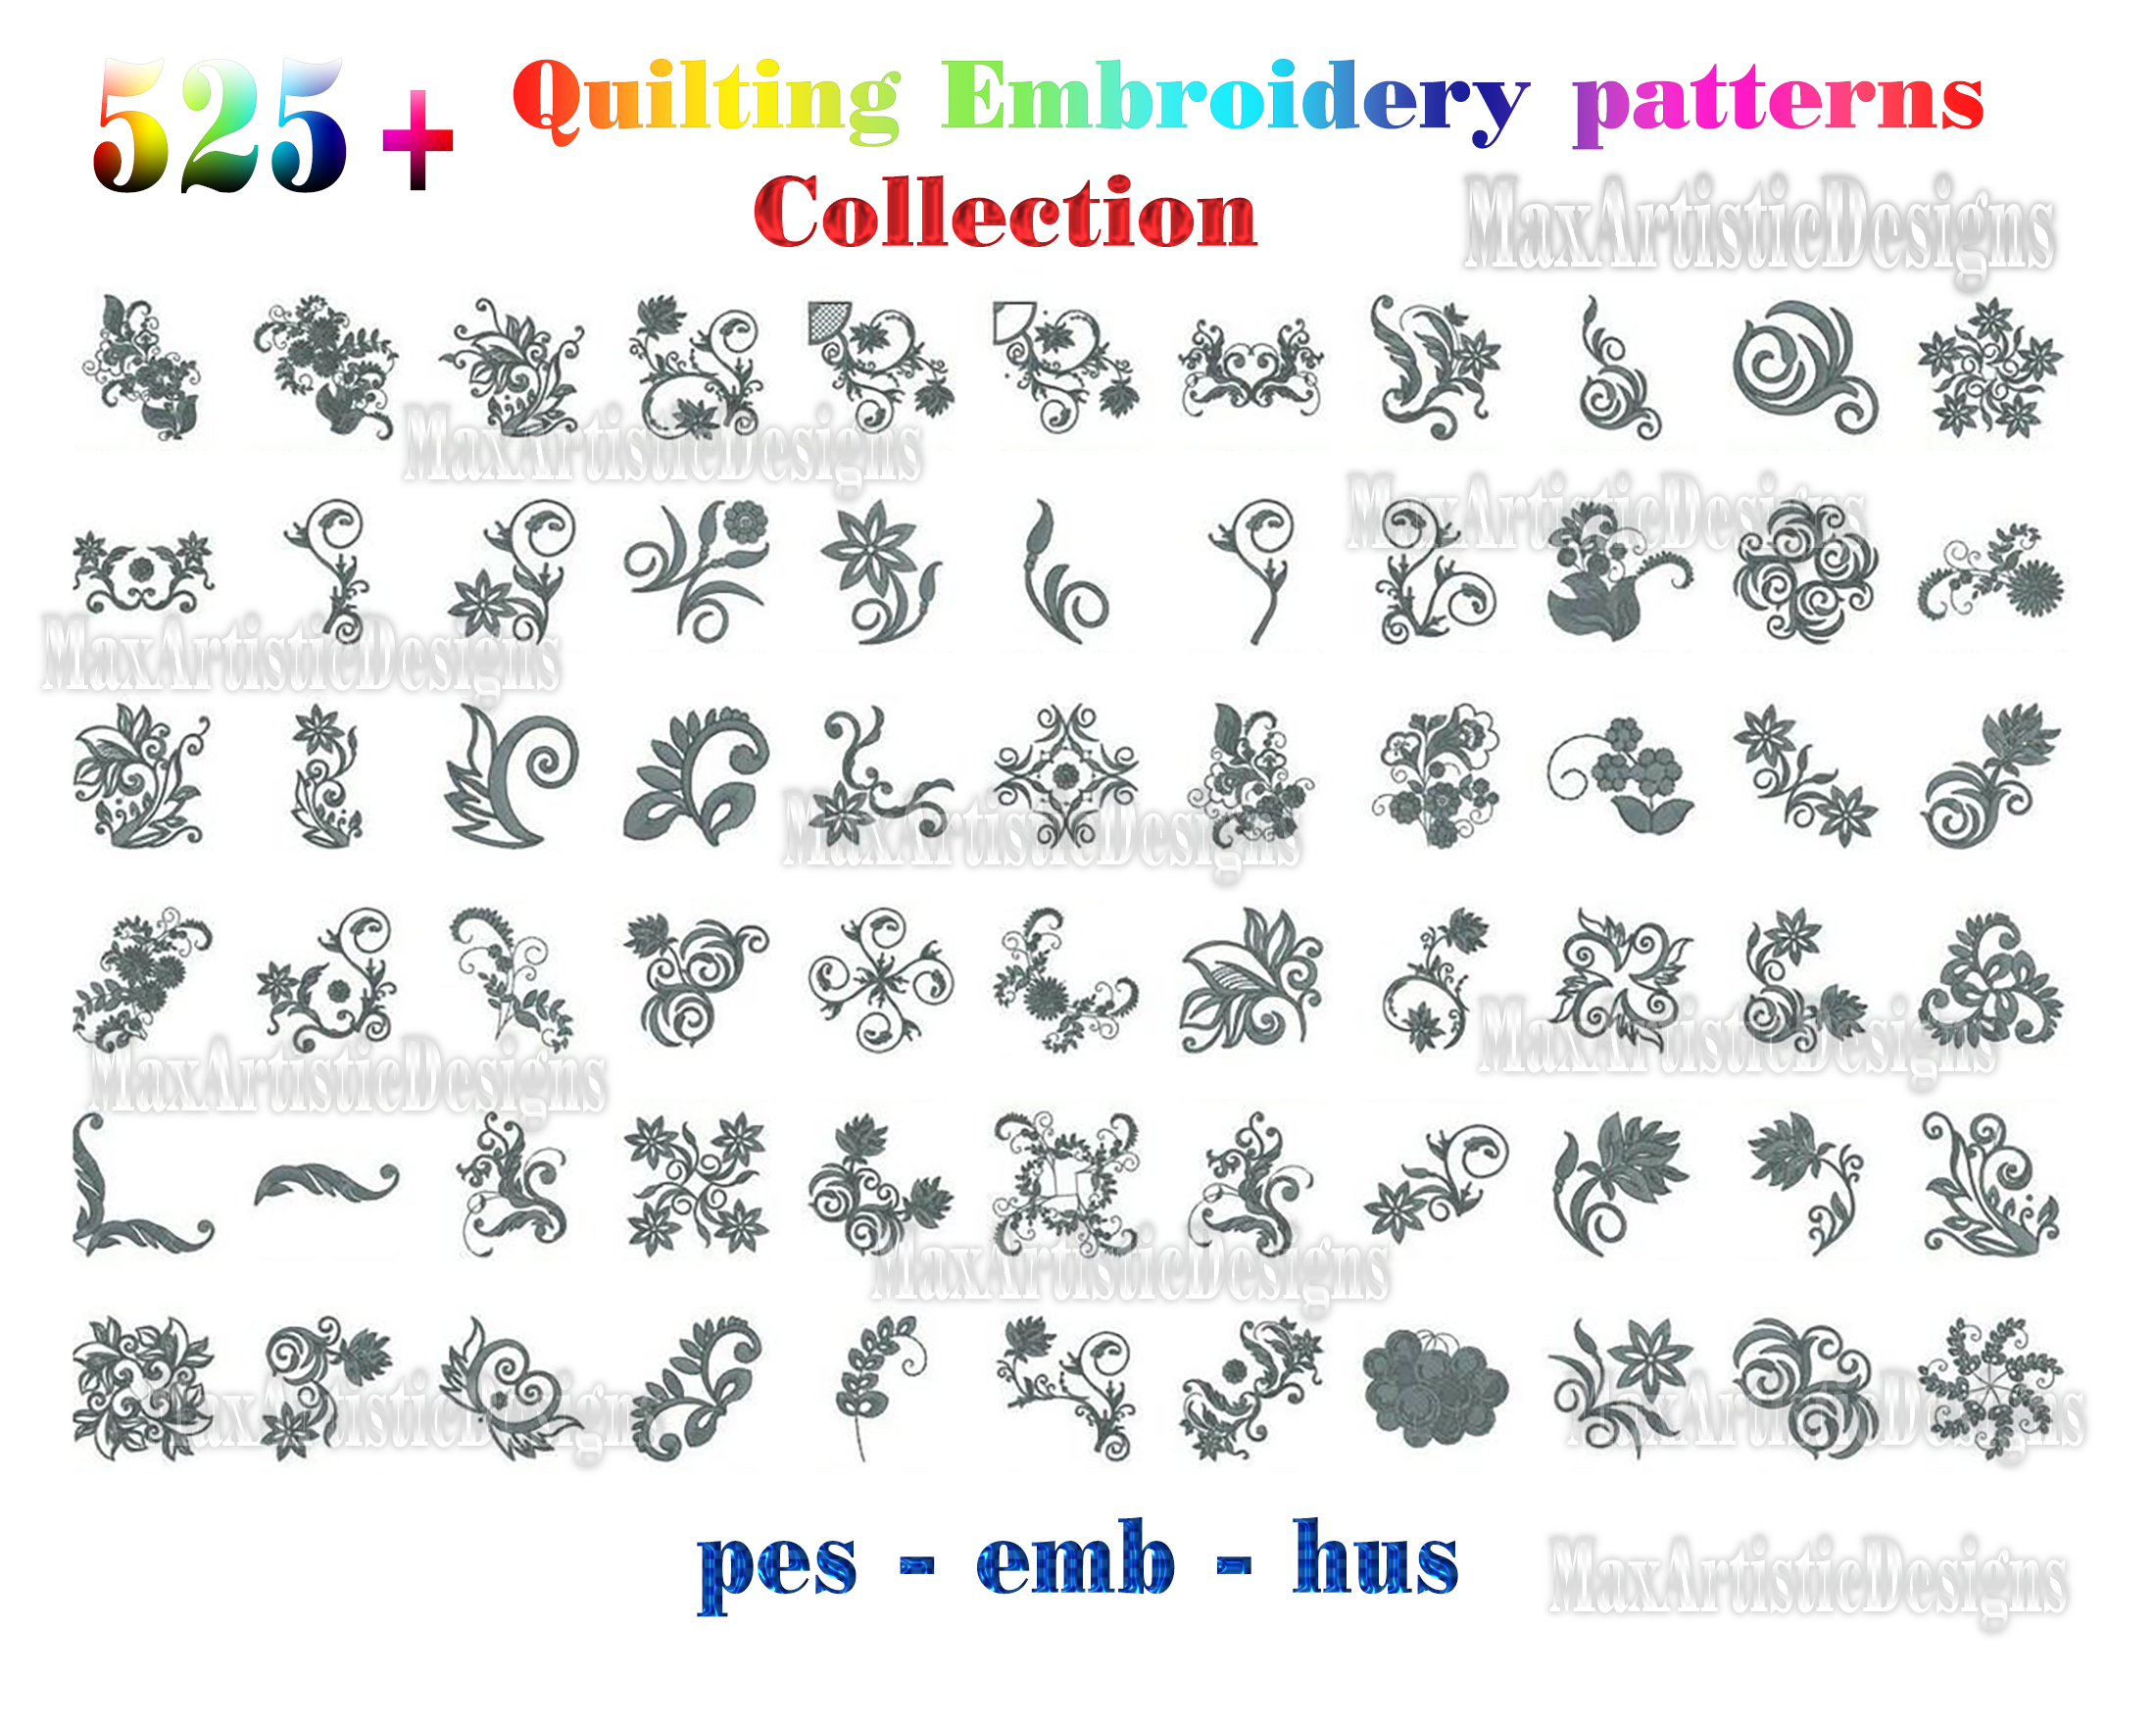 Collection de plus de 525 motifs de broderie quilting pour machine à broder aux formats pes emb hus